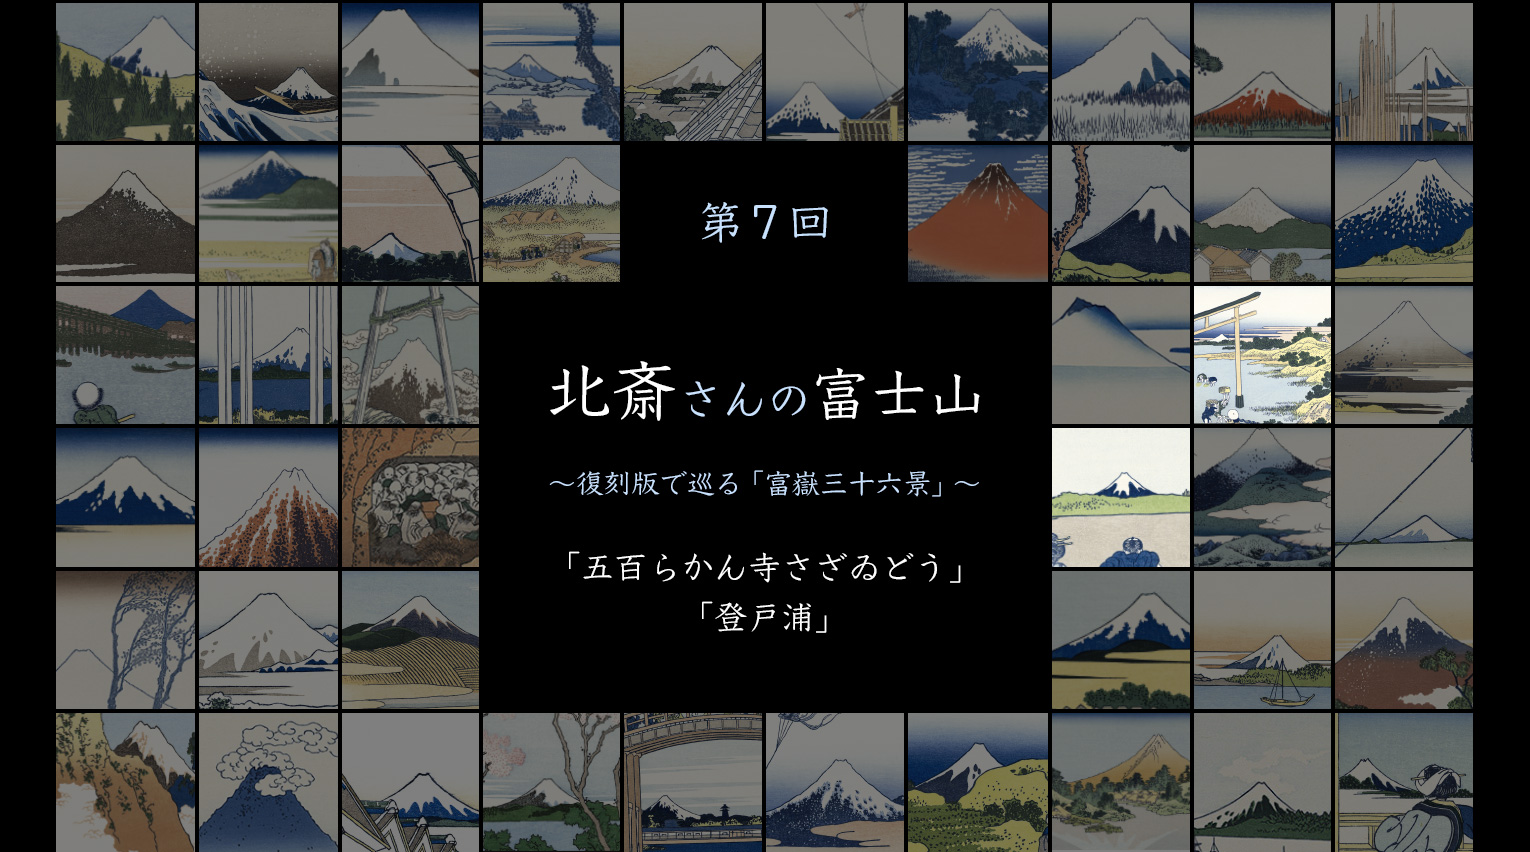 北斎さんの富士山 〜復刻版で巡る「富嶽三十六景」〜 (7)【PR】